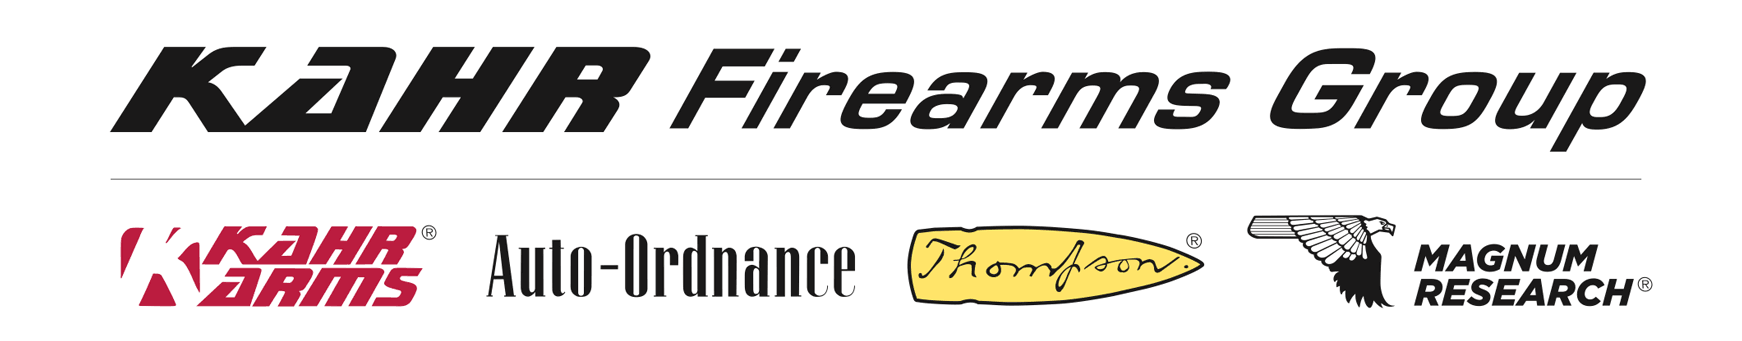 Kahr Firearms Group Logo, B&W, PDF